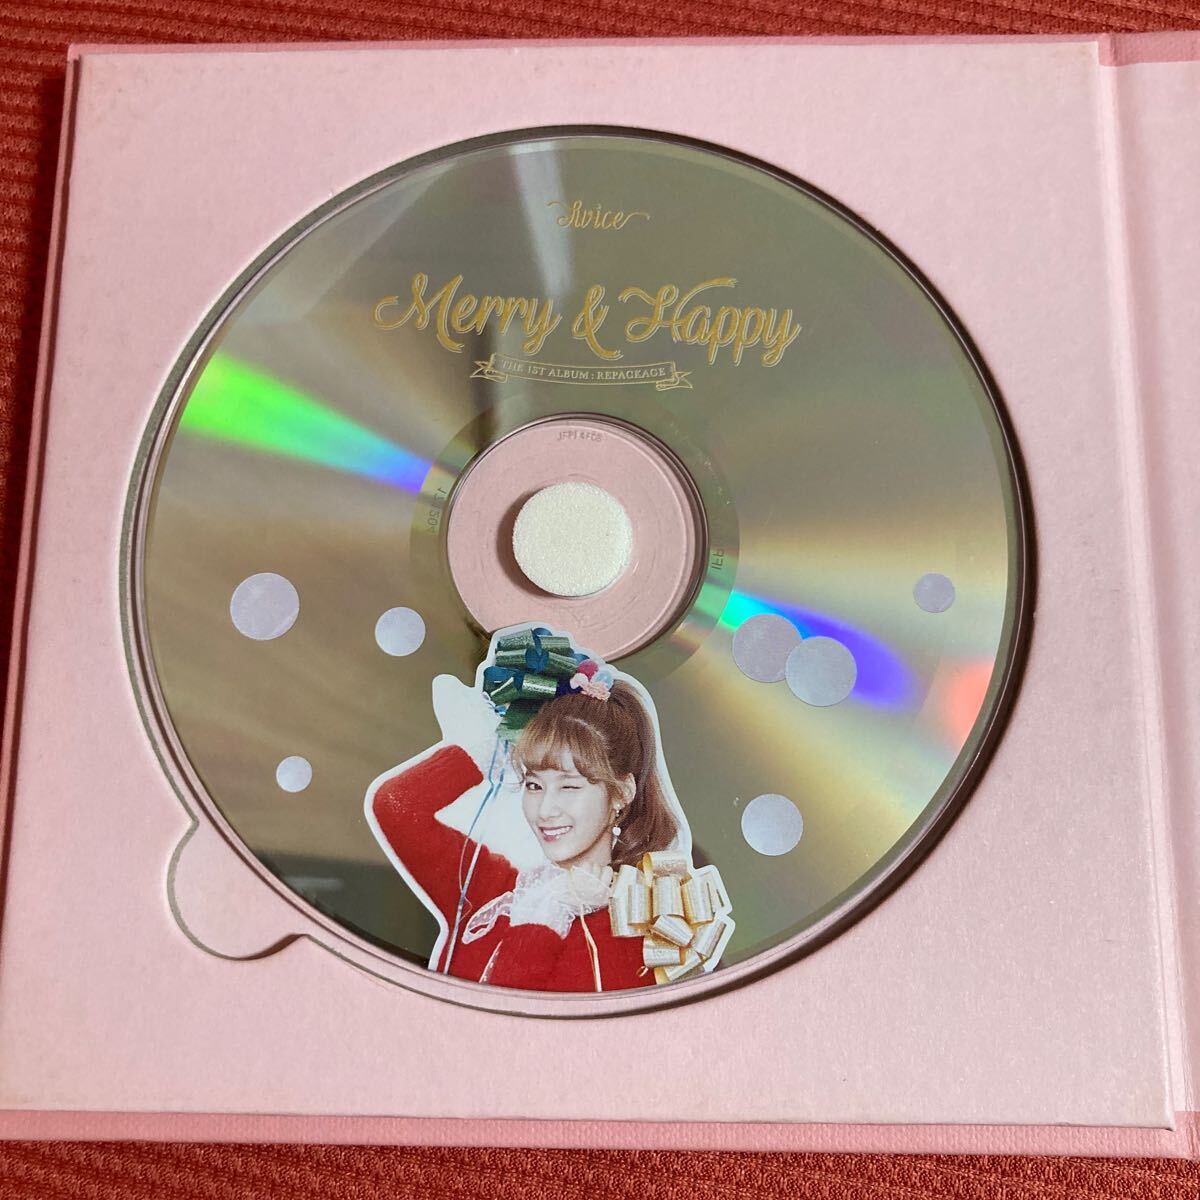 (ネポ33) Twice 1stアルバム リパッケージ - Merry & Happy (ランダムバージョン)_画像2